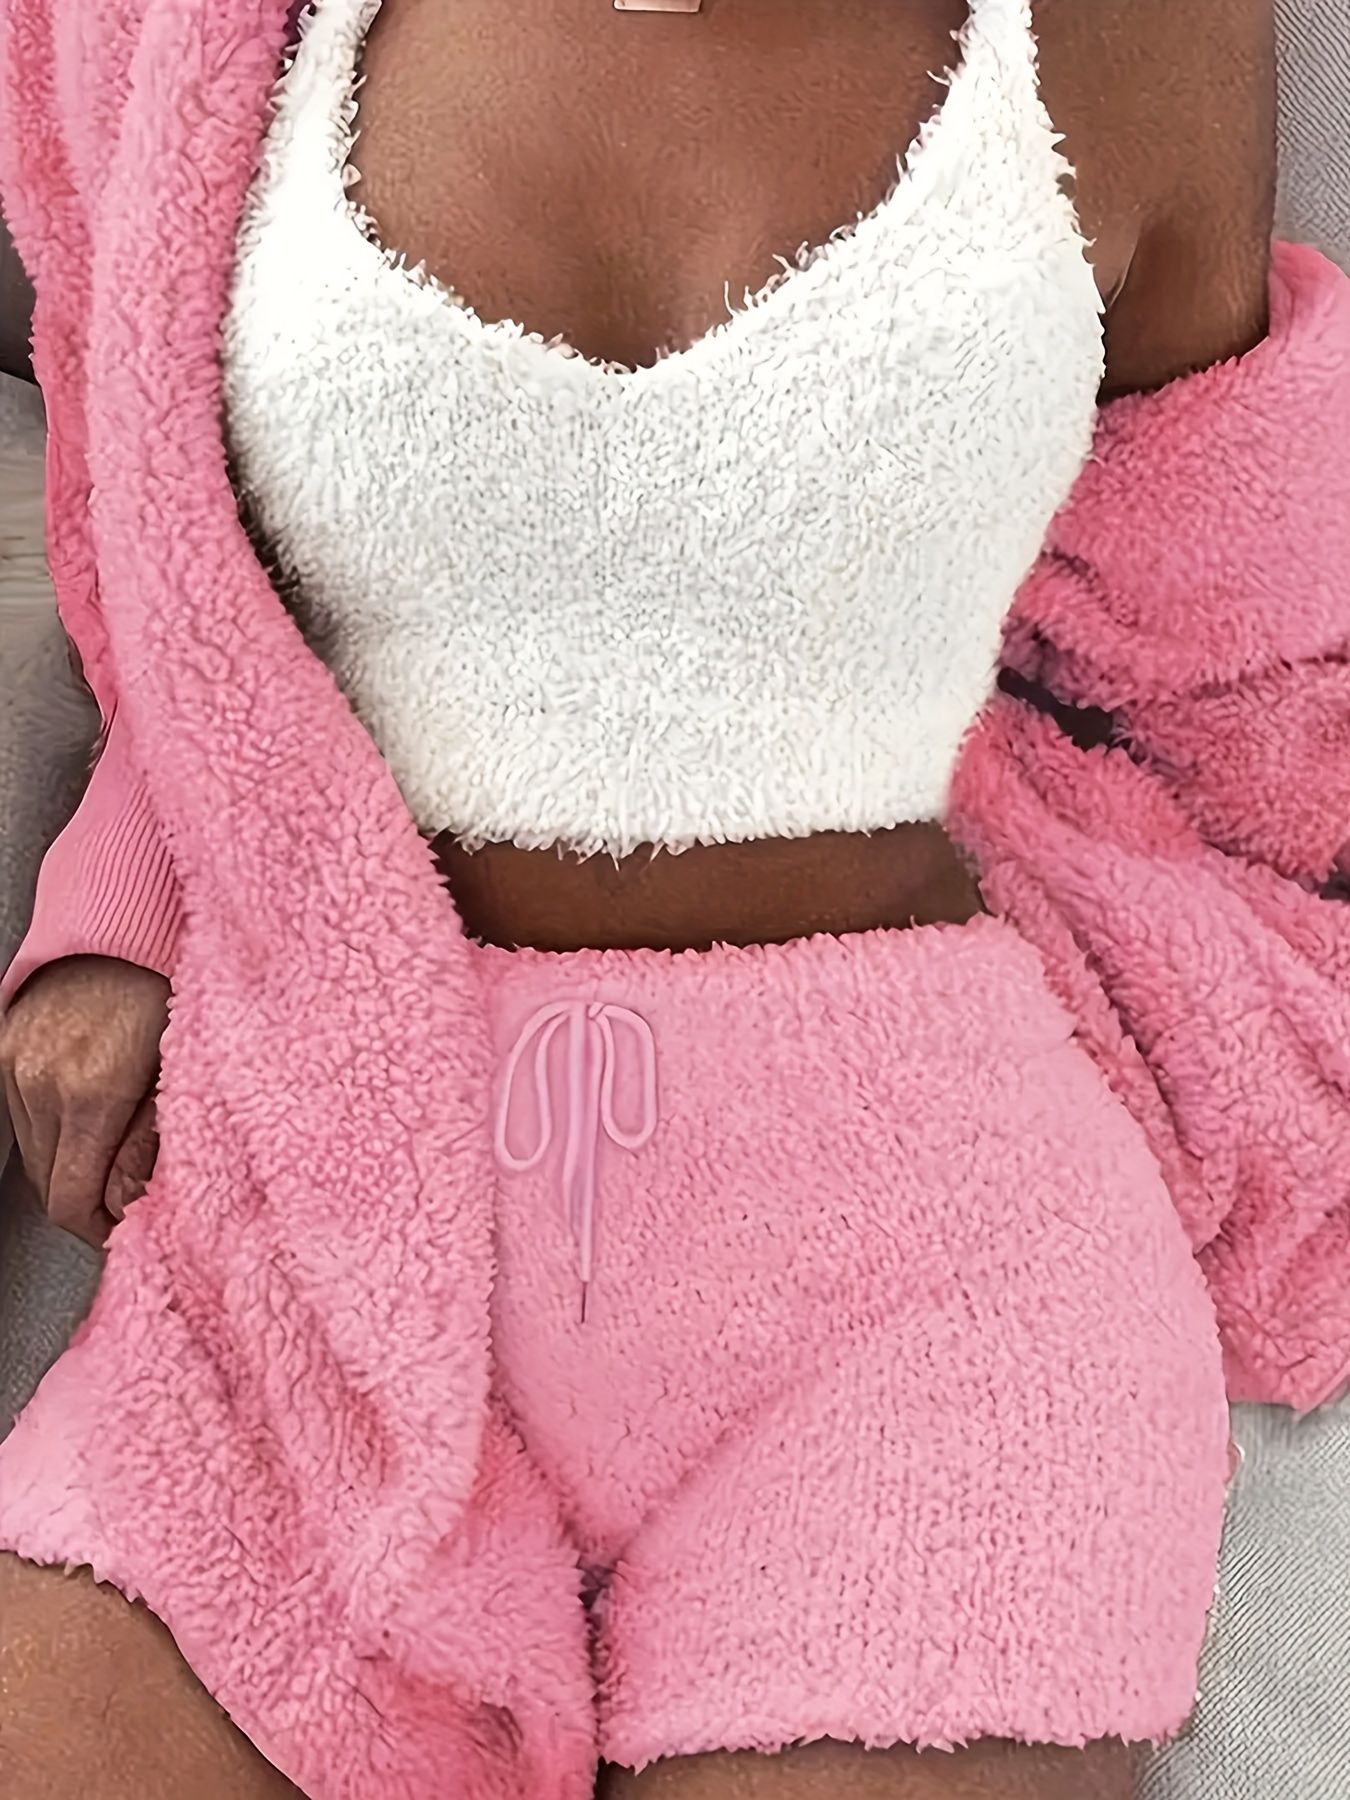 Fleece Crop Top & Shorts Pajama Set